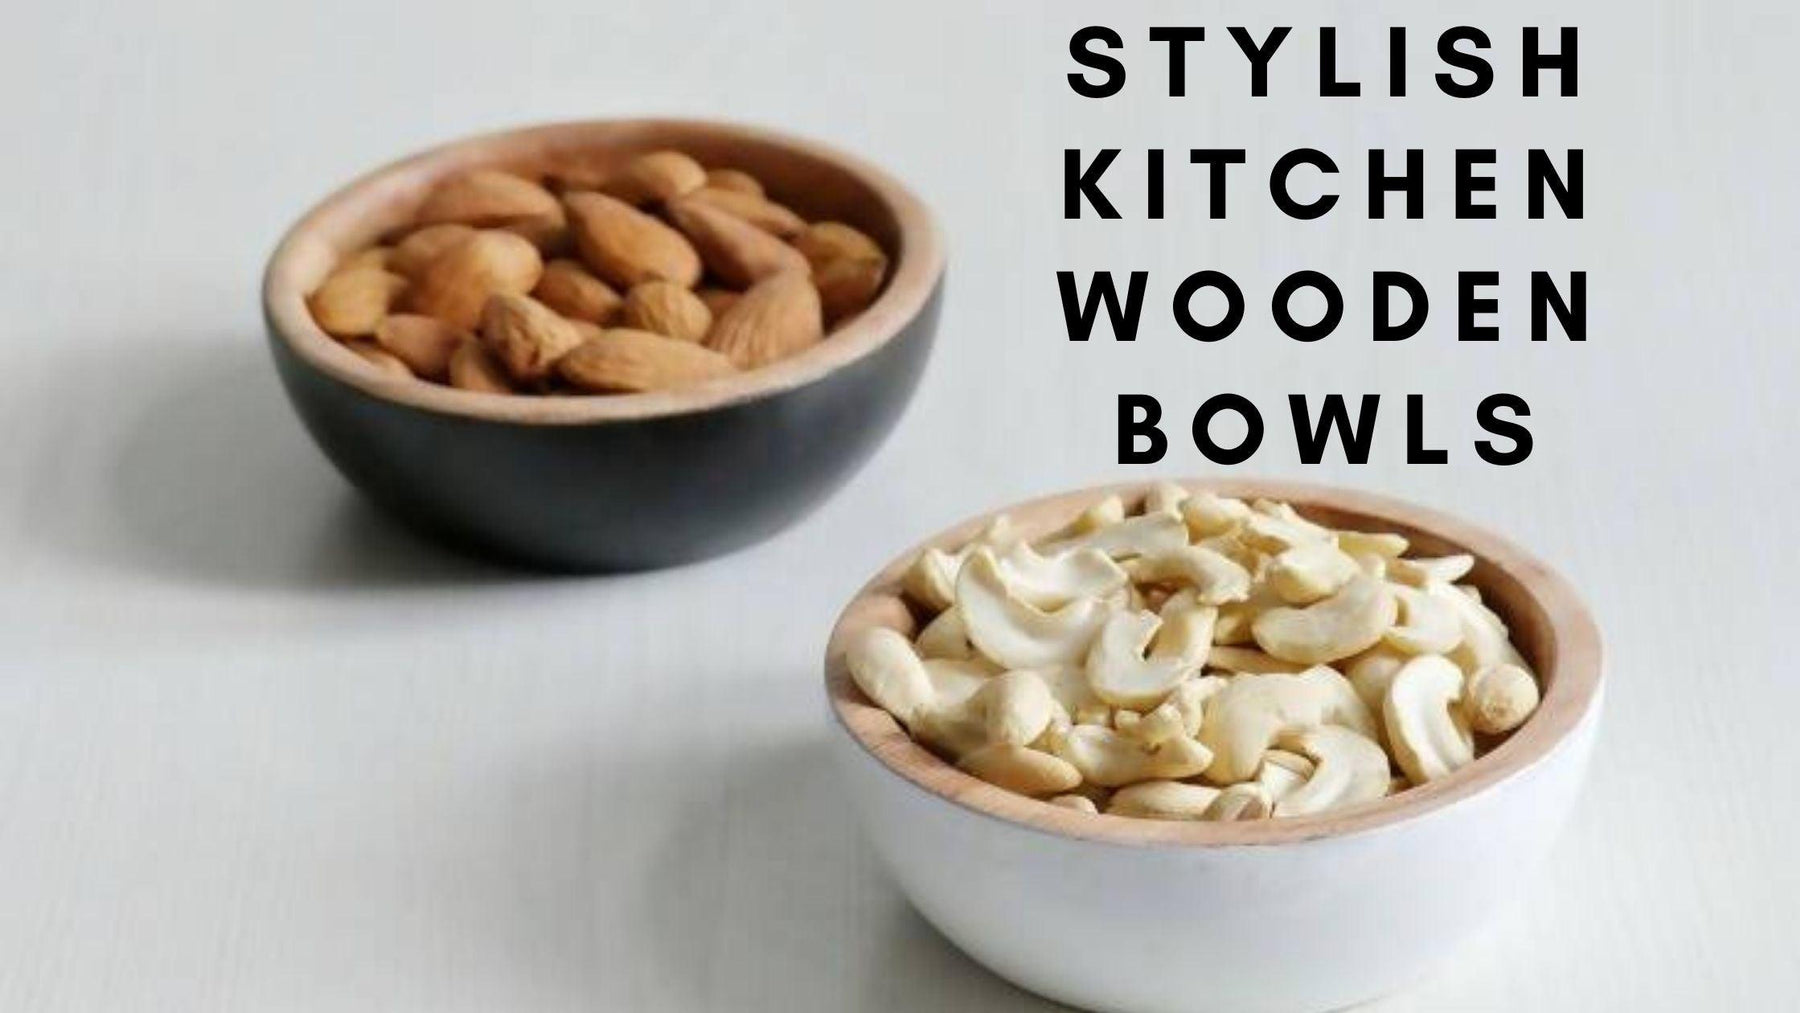 Stylish Kitchen Wooden Bowls - WoodenTwist